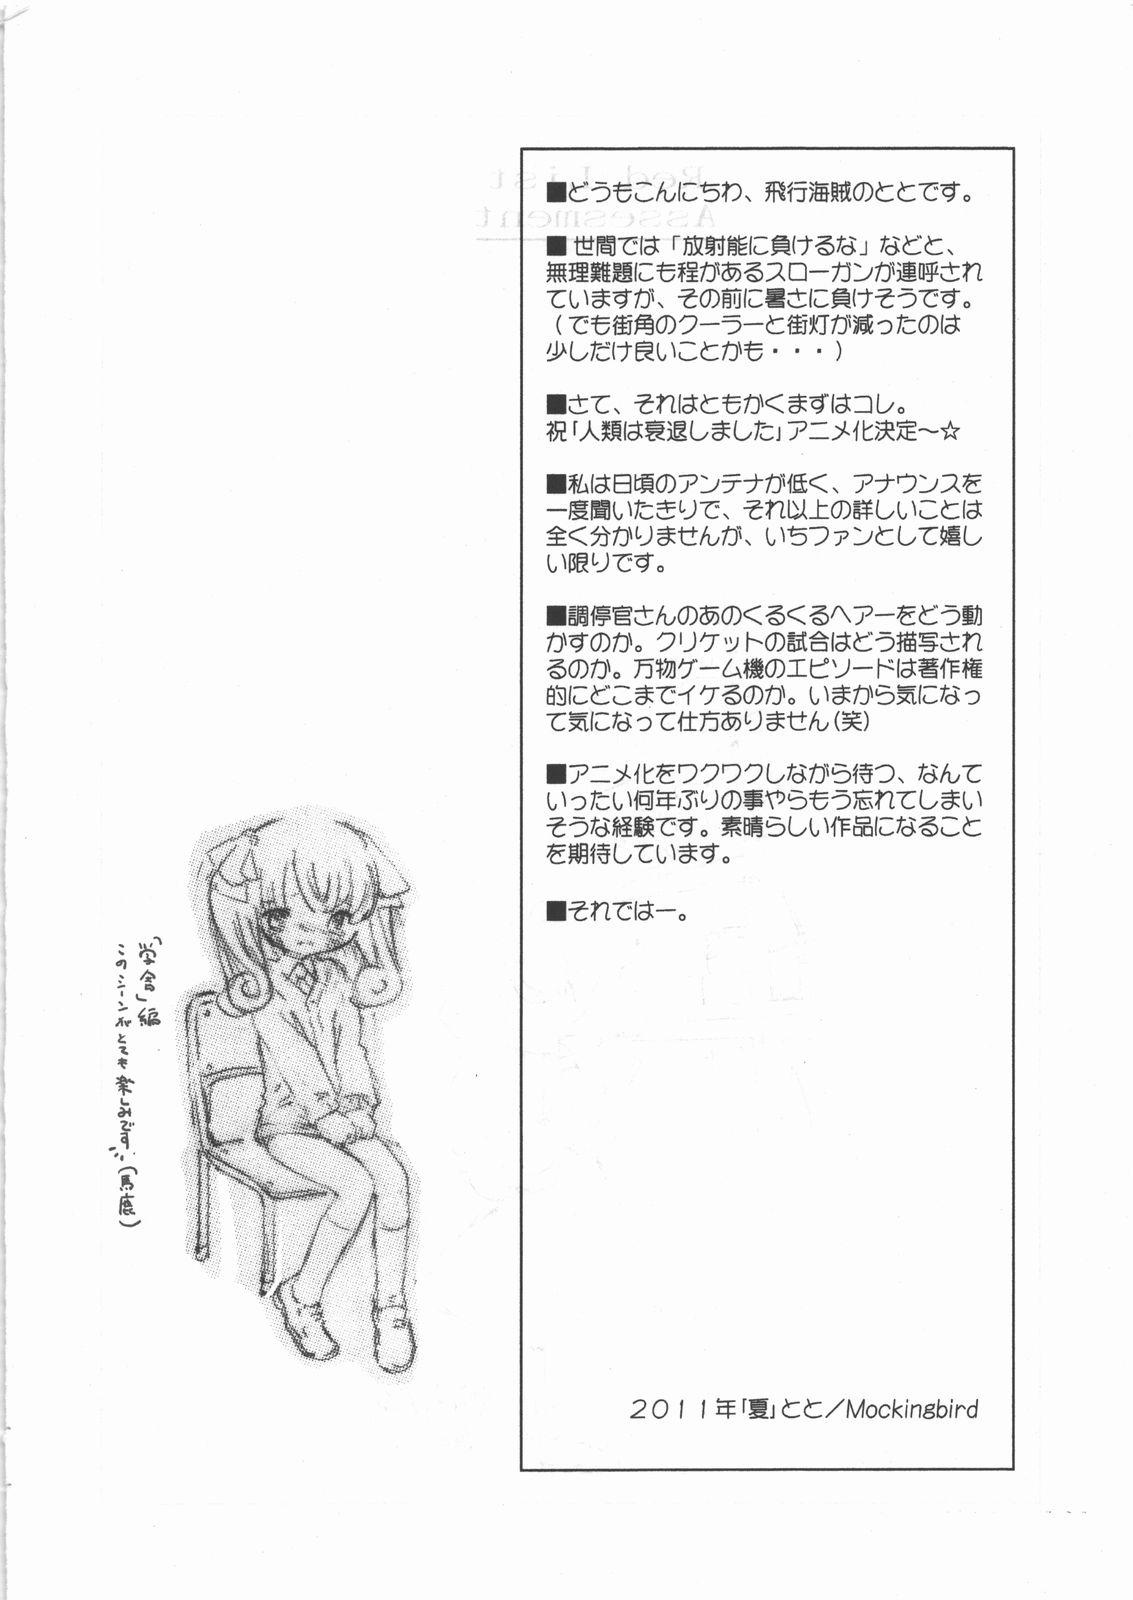 Chick Red List Assessment - Zetsumetsu Kigushu San - Jinrui wa suitai shimashita Reversecowgirl - Page 3